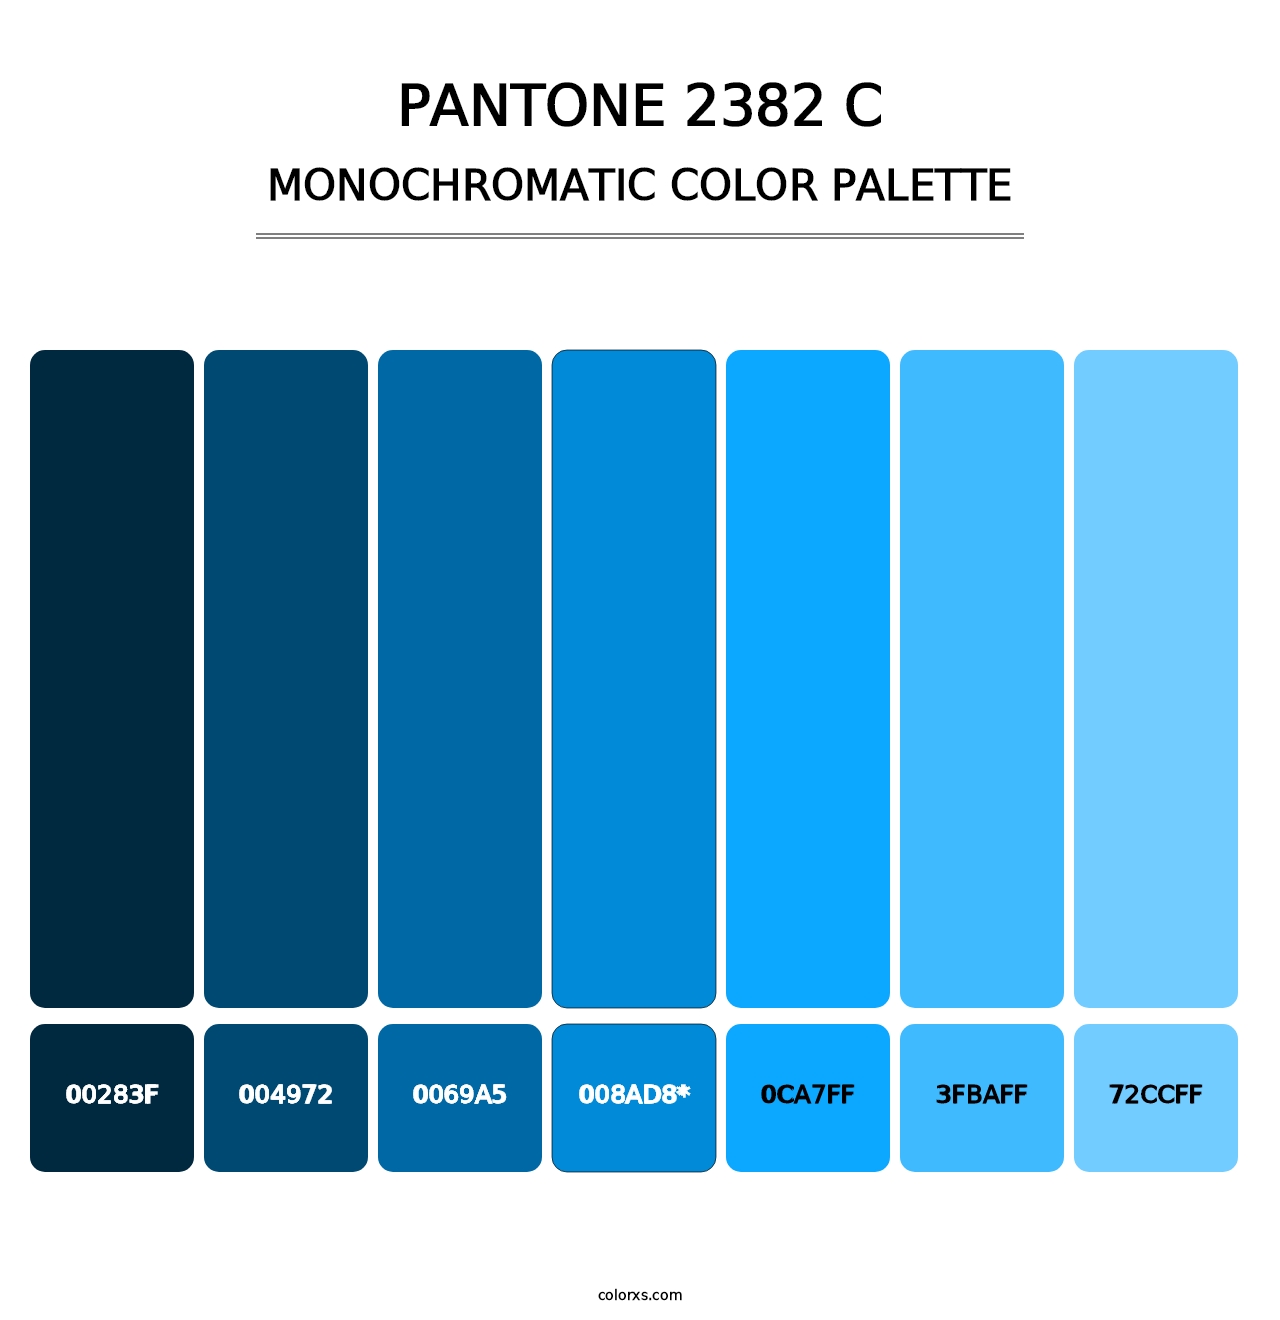 PANTONE 2382 C - Monochromatic Color Palette